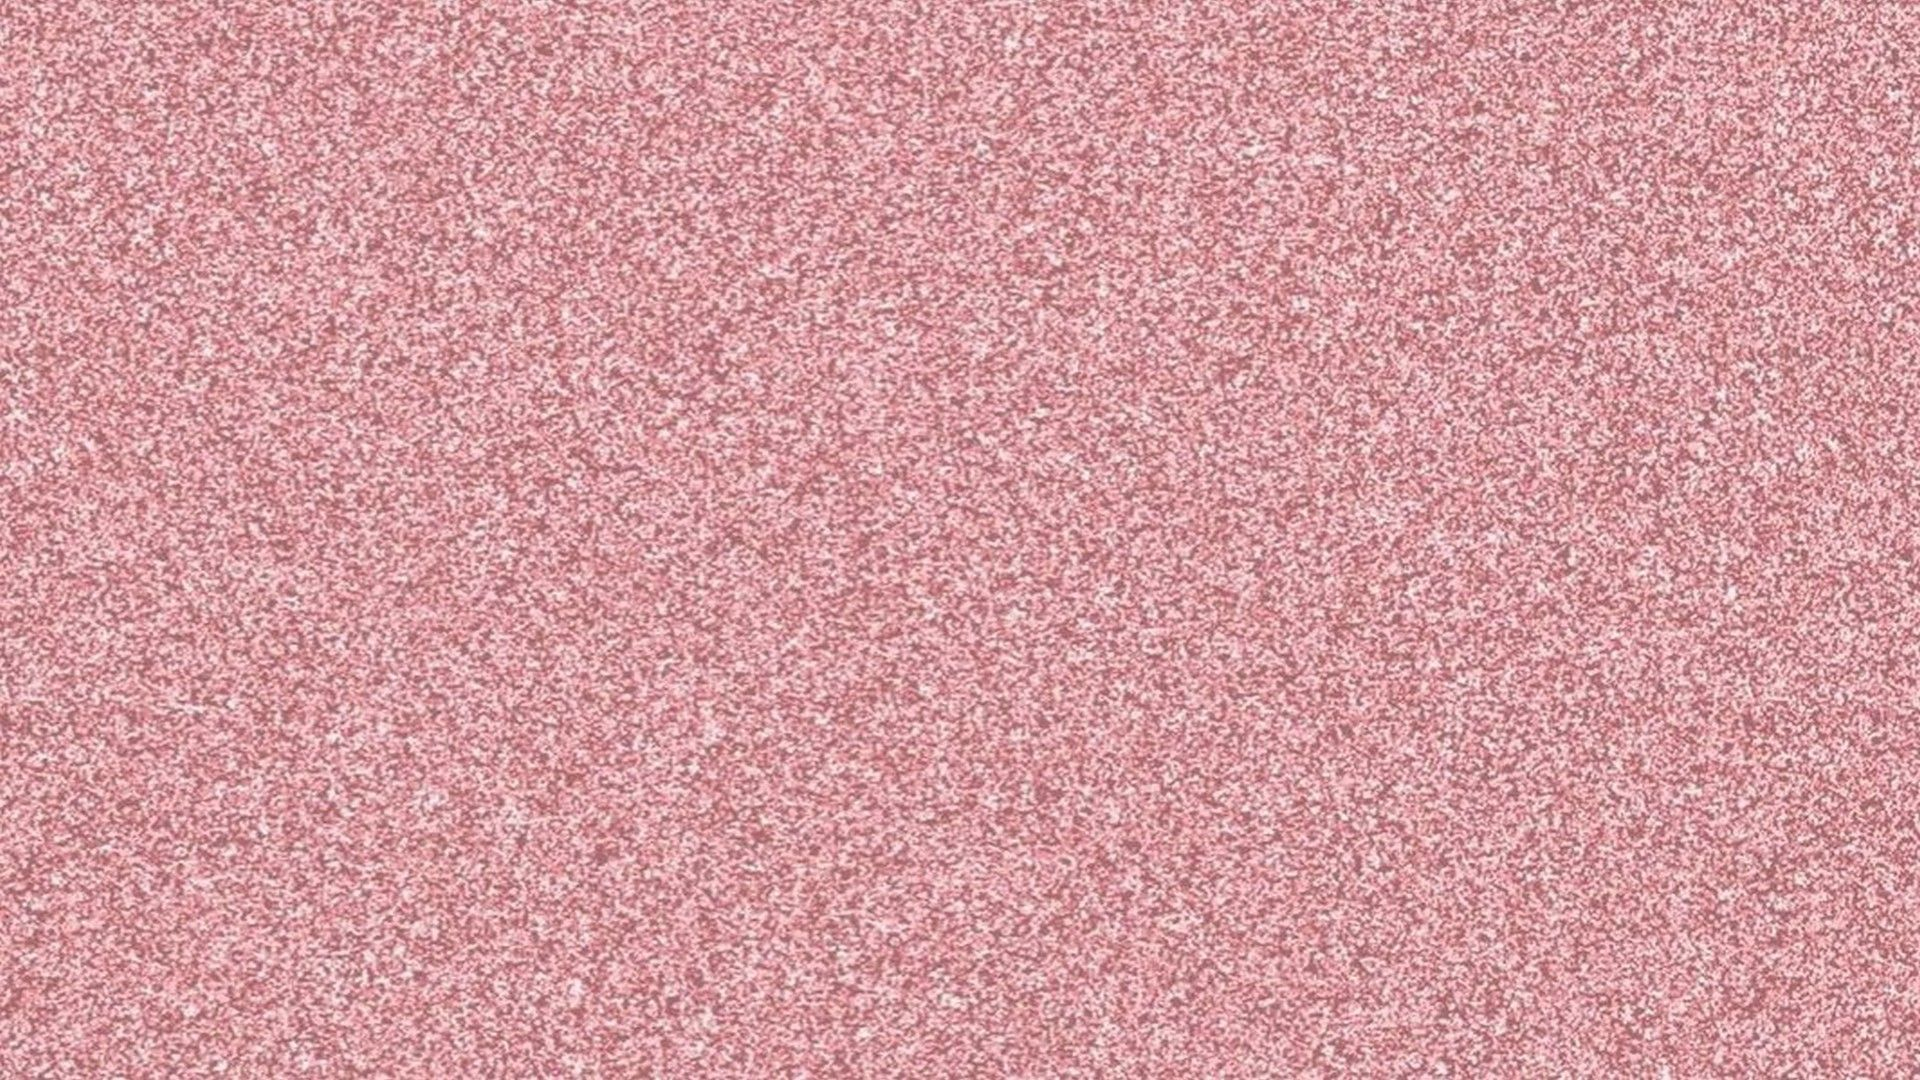 1920x1080 Pink Glitter Desktop Wallpapers Top Free Pink Glitter Desktop Backgrounds